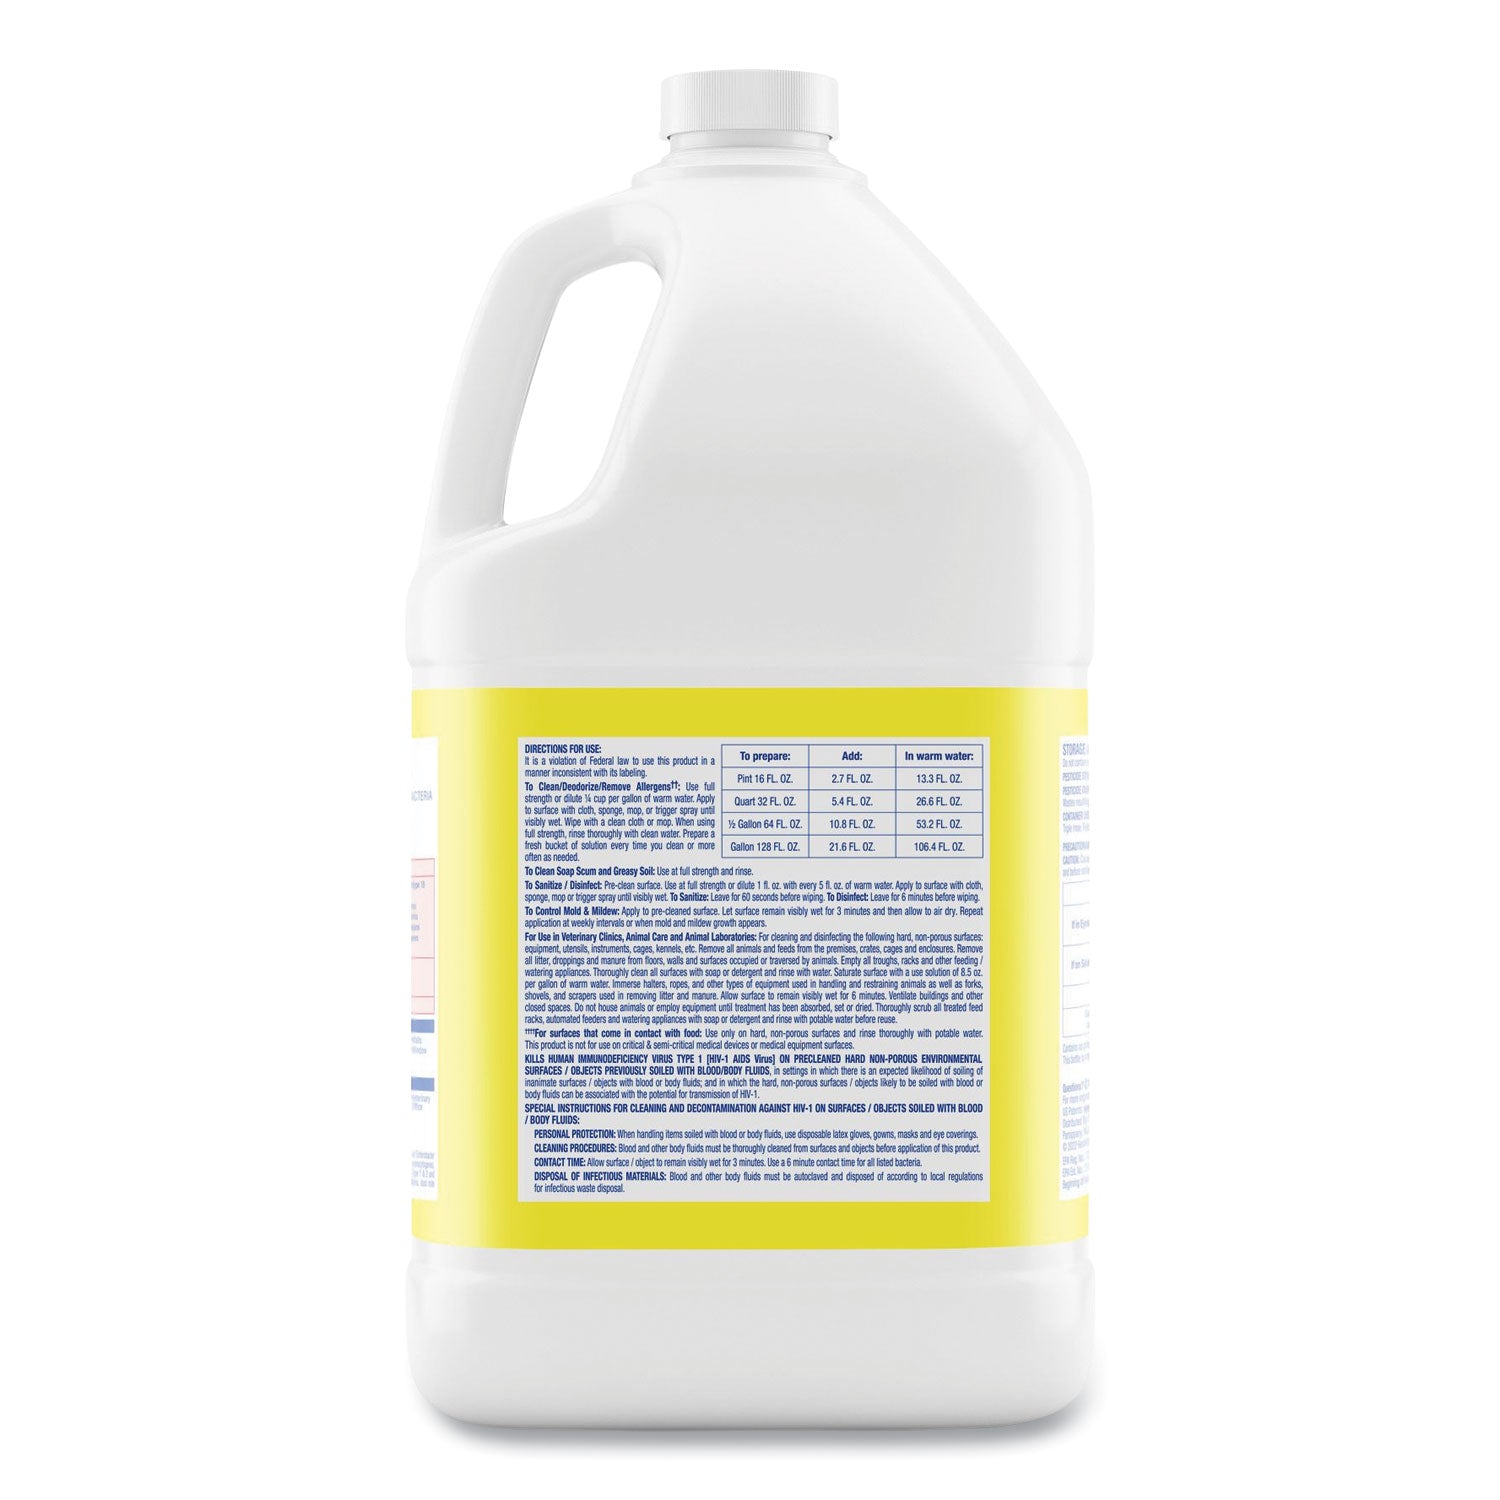 disinfectant-deodorizing-cleaner-concentrate-lemon-scent-128-oz-bottle-4-carton_rac99985ct - 3